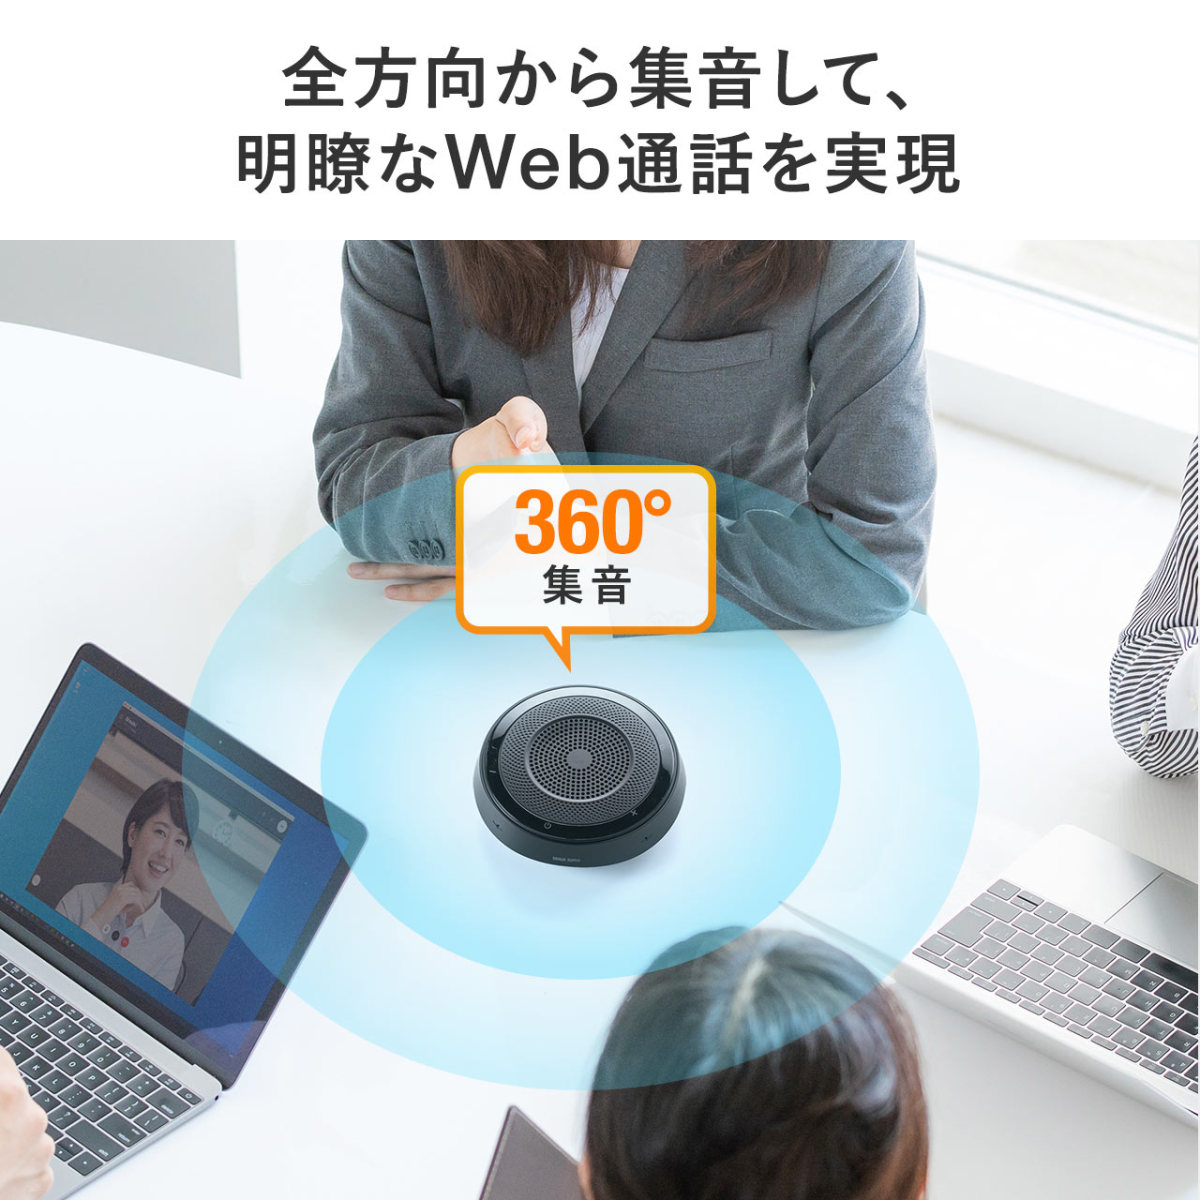 マイクスピーカー WEB会議 スピーカーフォン 全指向性 360度 集音 Bluetooth ワイヤレス USB AUX接続 ノイズキャンセリング 会議用 テレワーク 400-BTMSP1